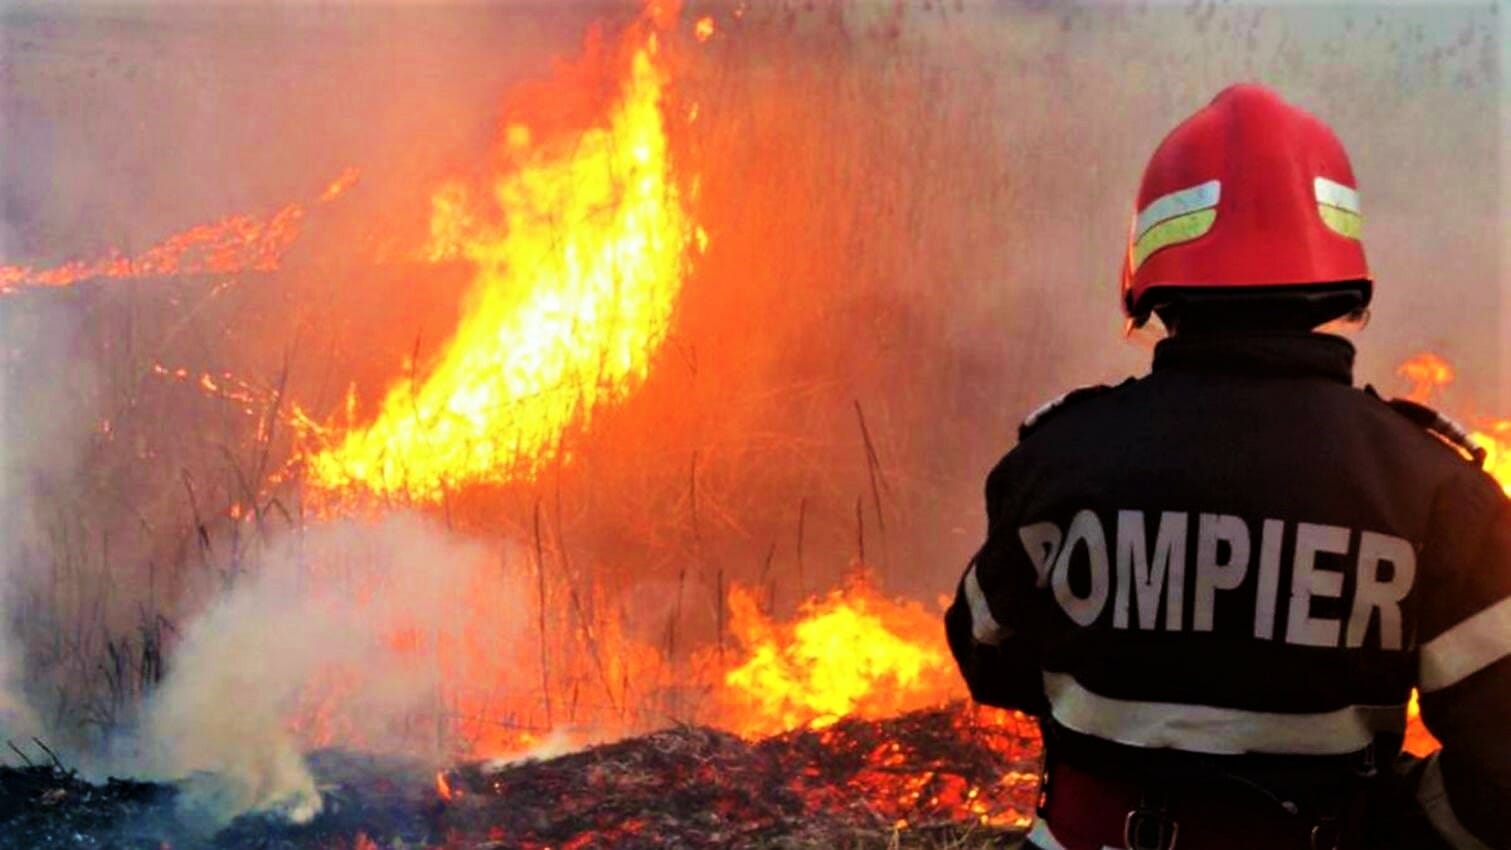 Nu e film! Soția unui pompier din Arad a incendiat casele vecinilor ca să-și vadă soțul la muncă